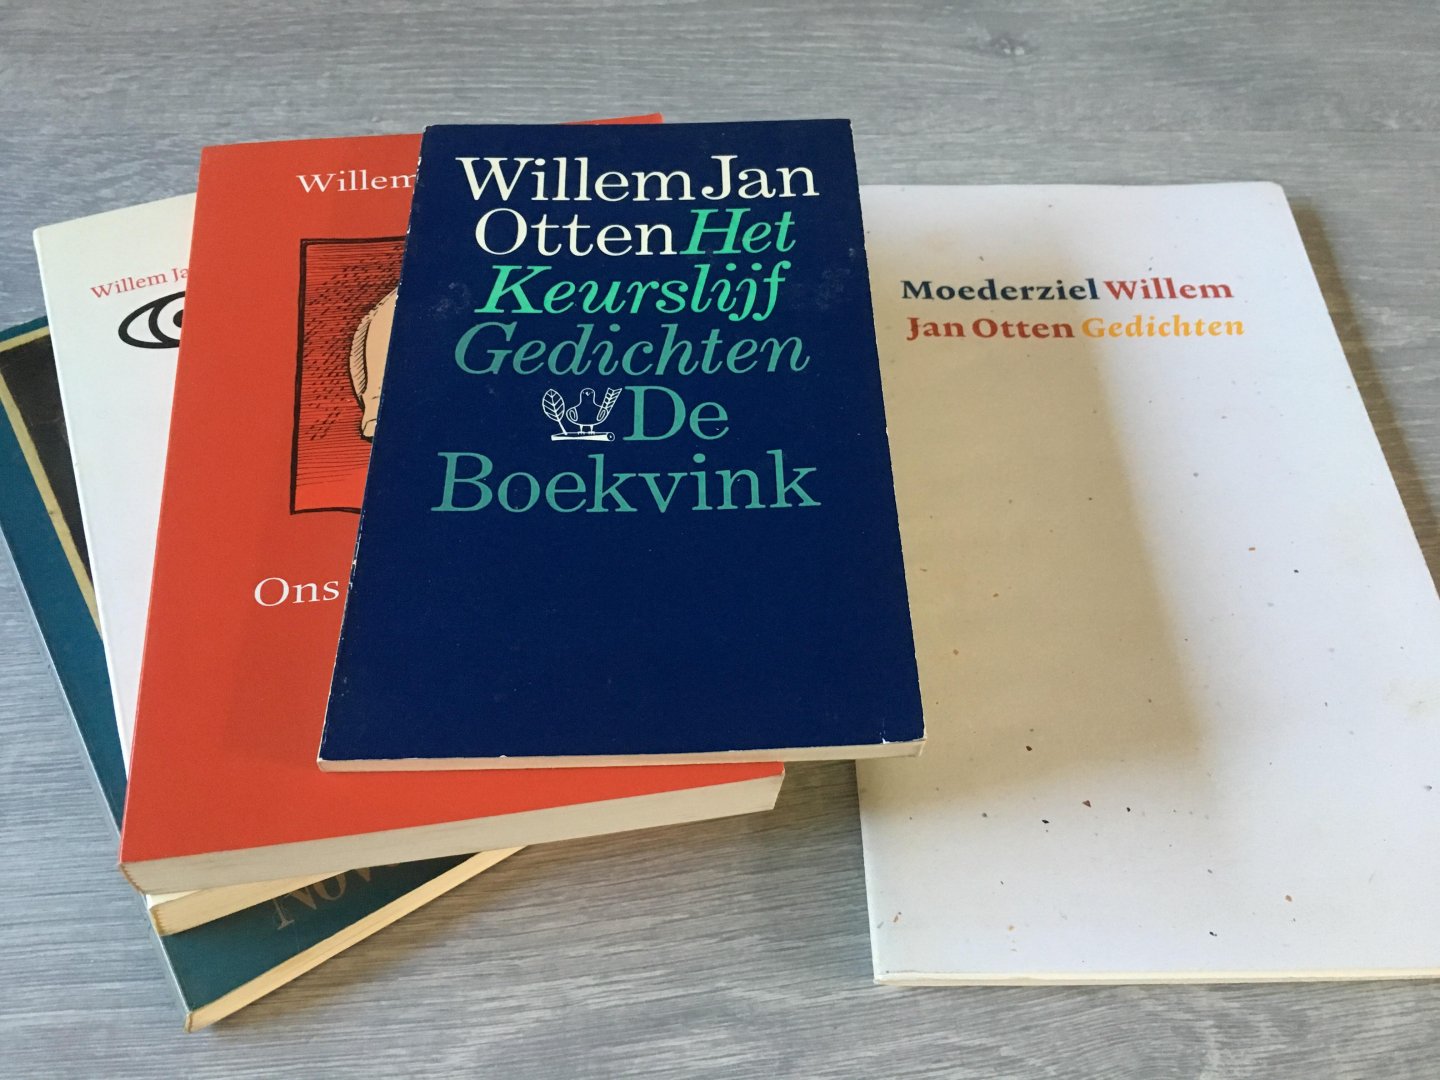 Willem Jan Otten - 5 uitgaven van Willem Jan Otten; Moederziel, Het Keurslijf, Ons mankeert niets, Een man van horen zeggen, De wijde blik, gesigneerd!